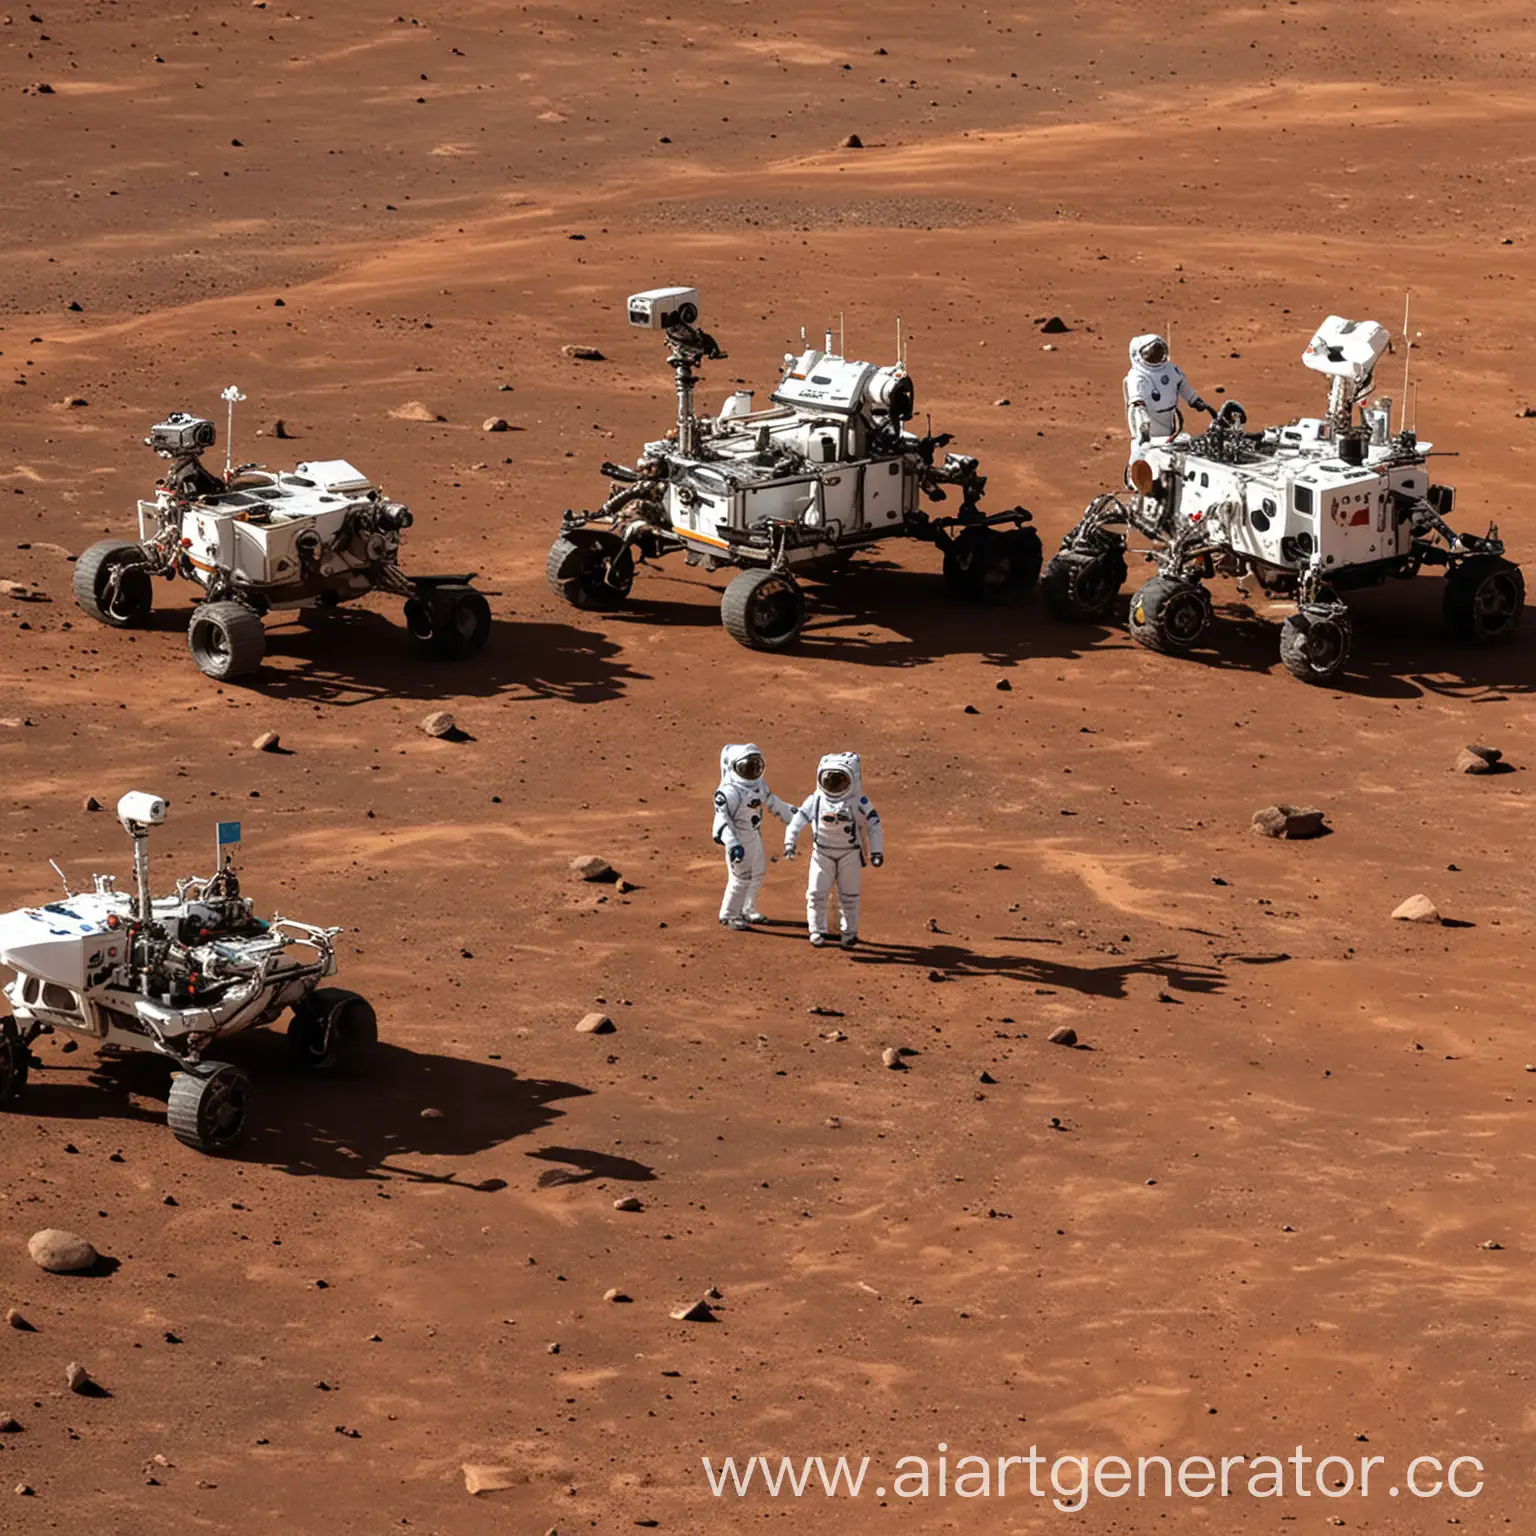 7 казахских астронавта с 3 роботами и двумя марсоходами на планете марс